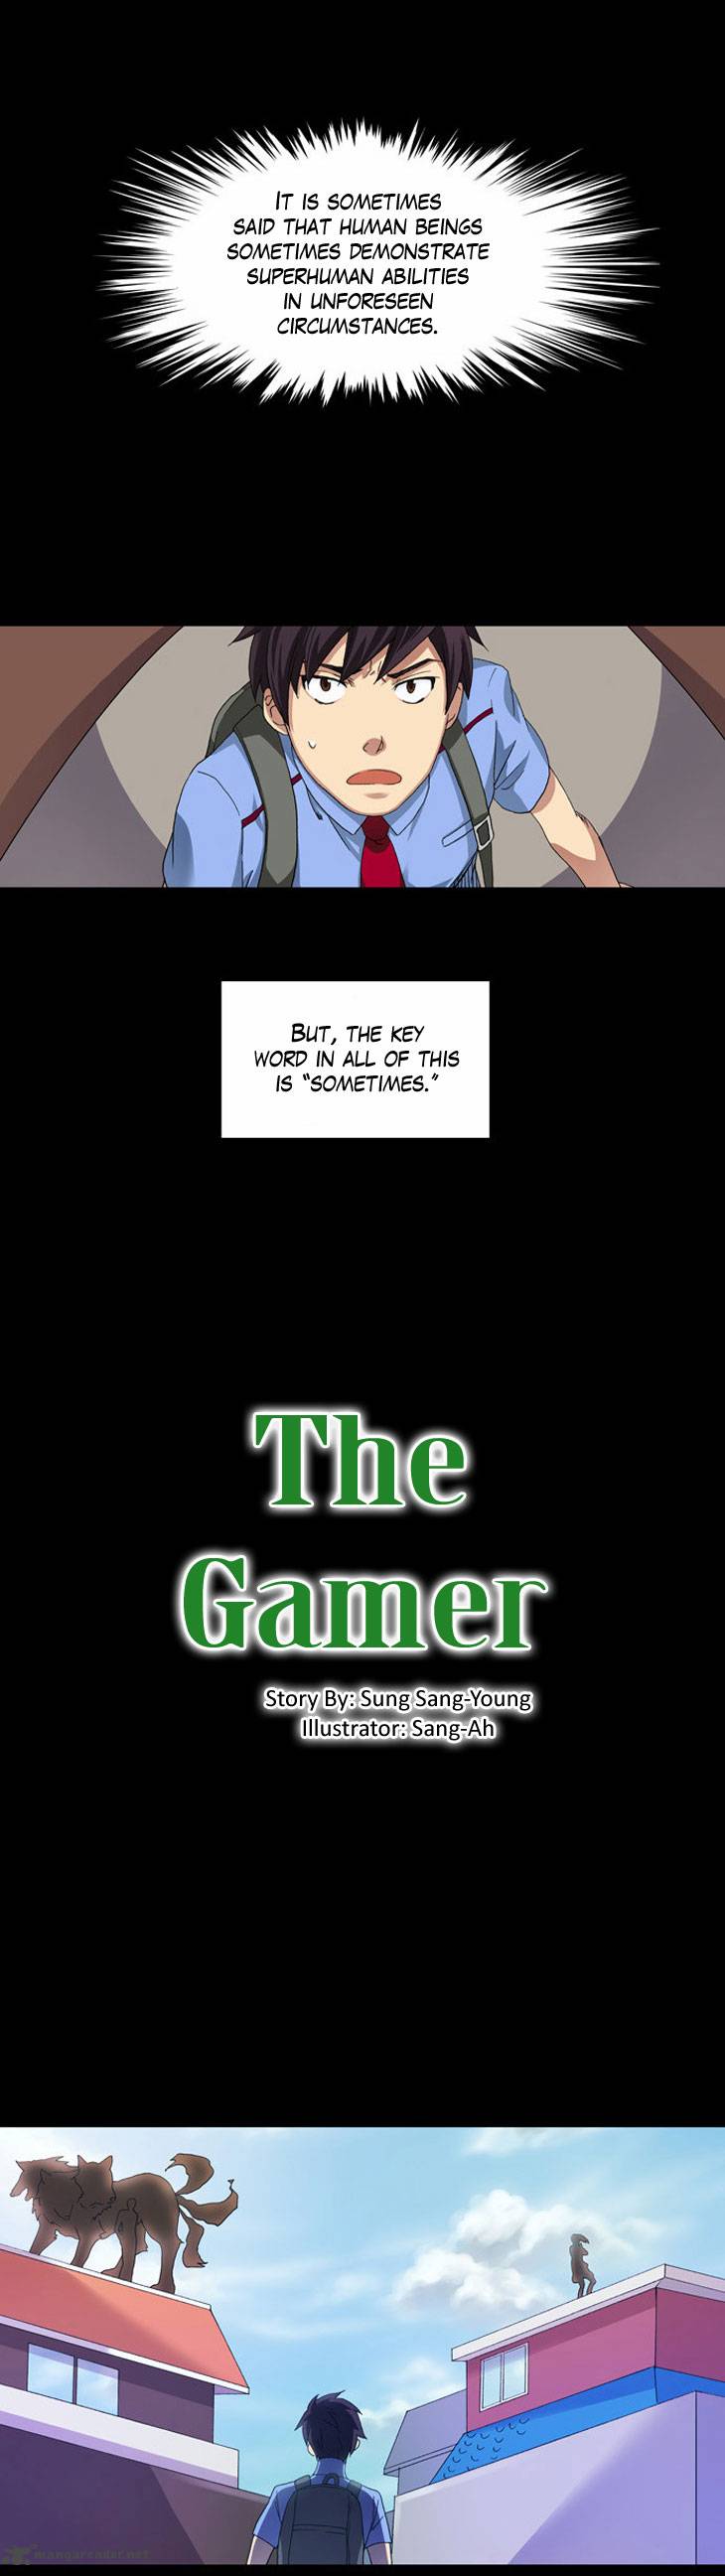 The Gamer 2 2